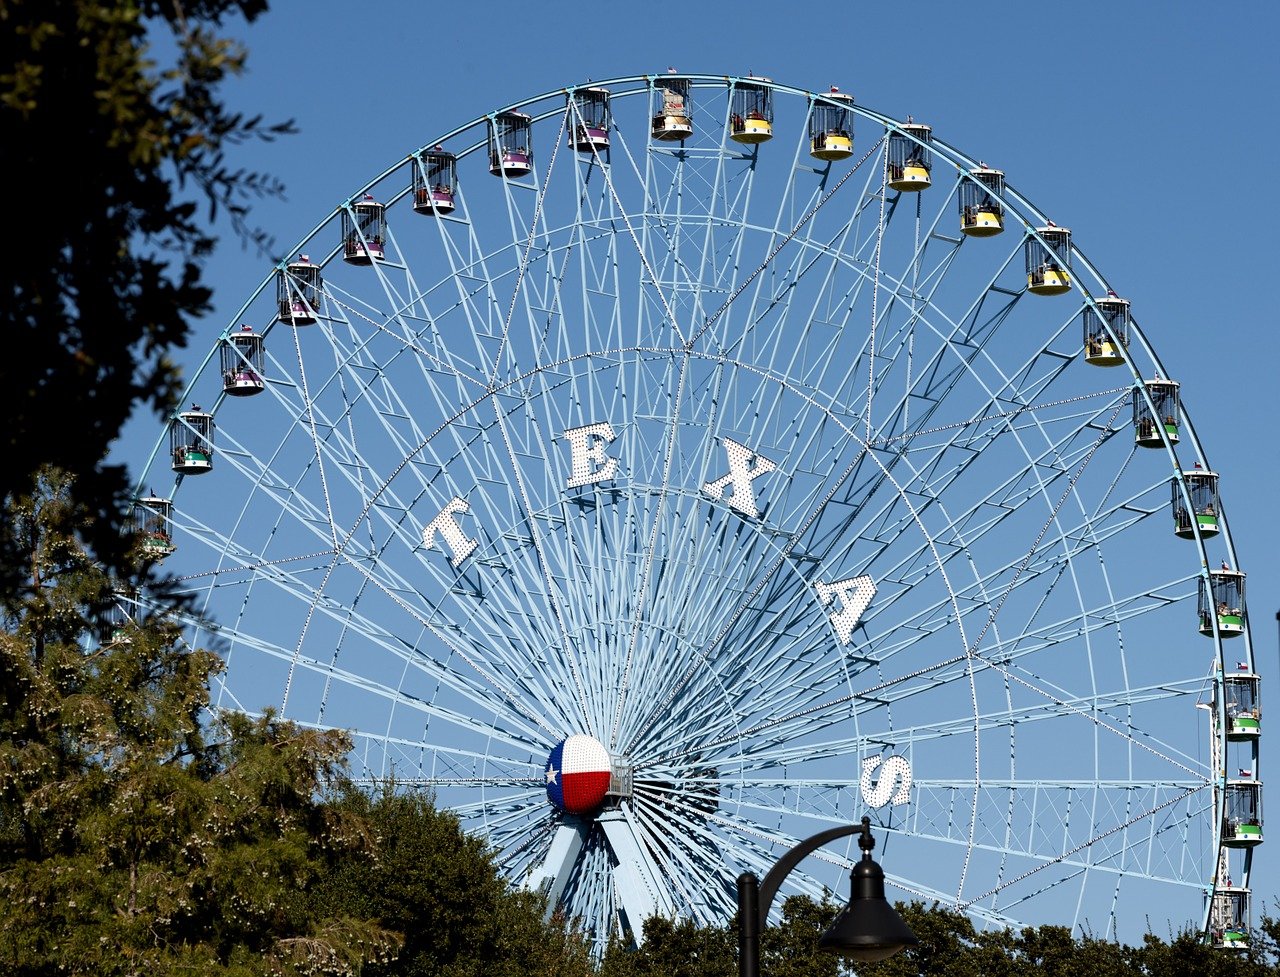 An amusement park in Dallas, TX